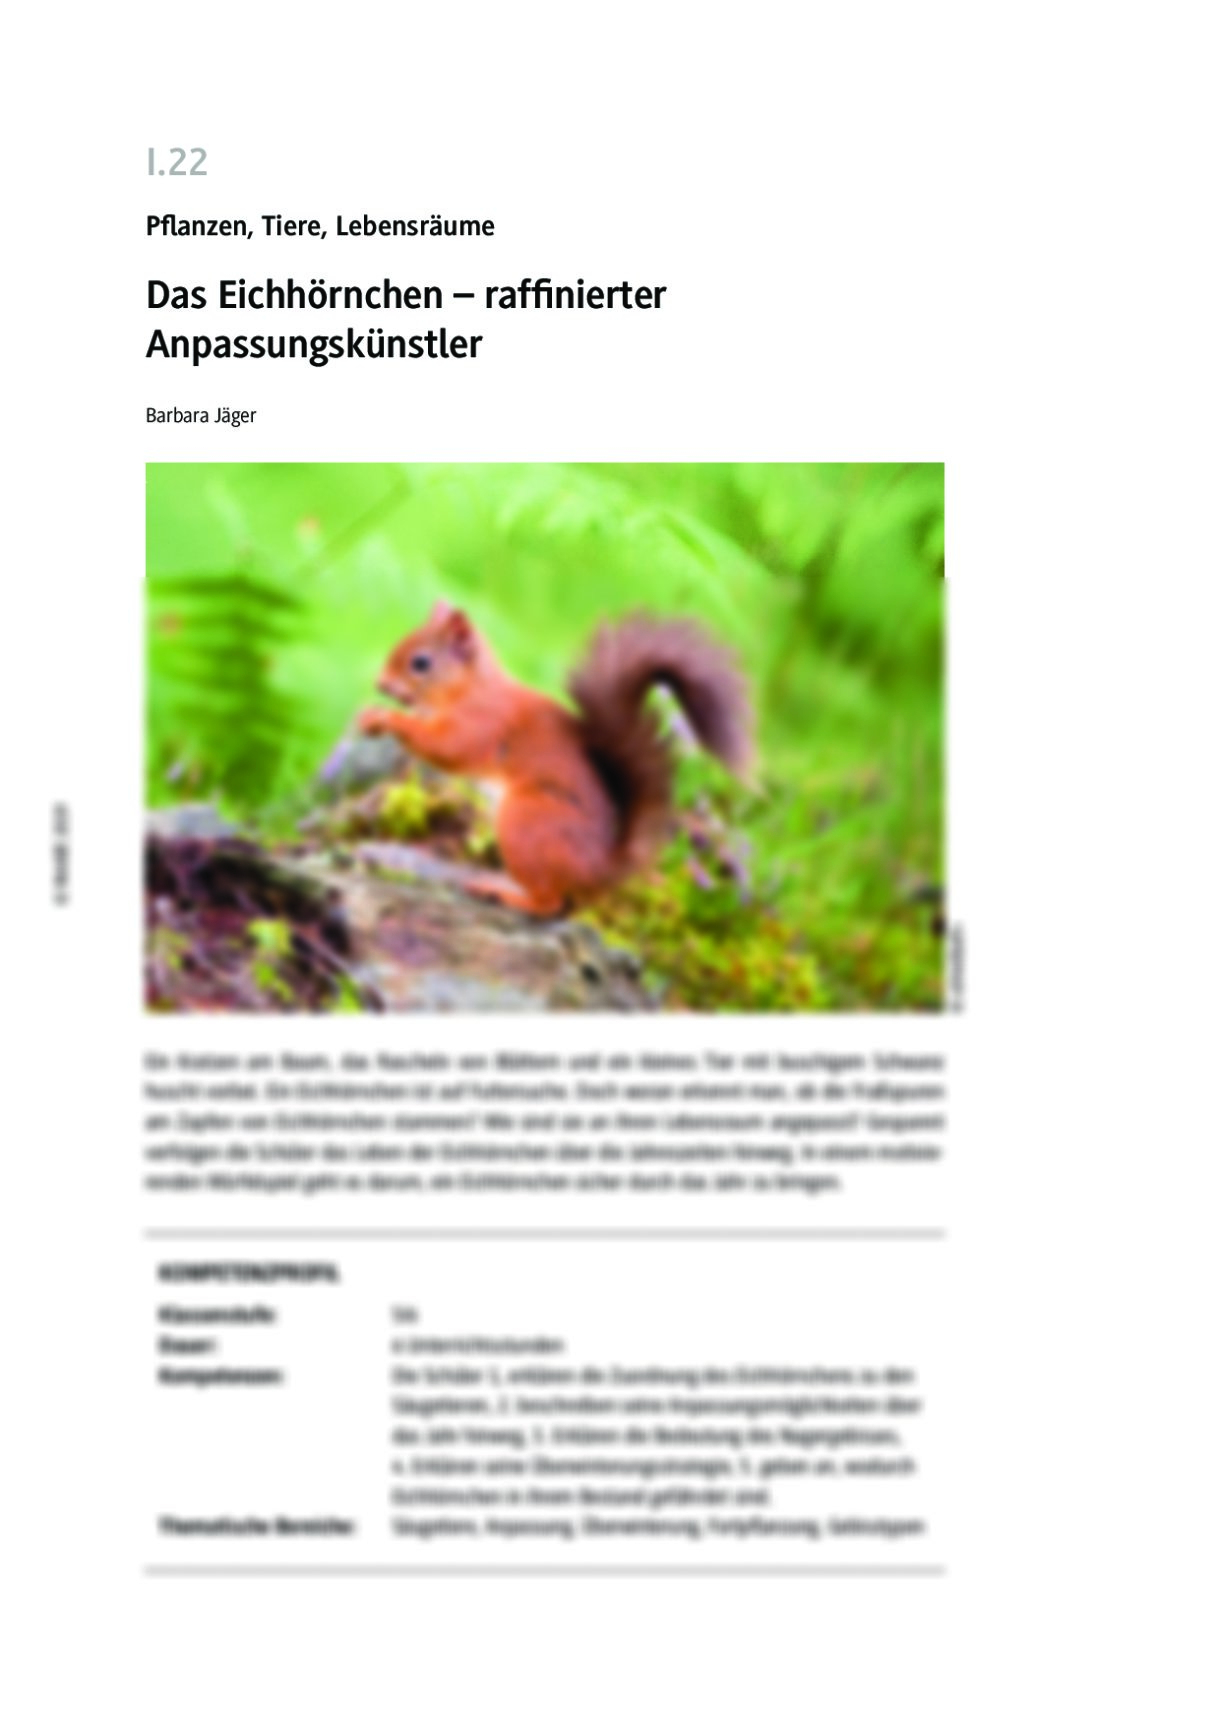 Das Eichhörnchen – Raffinierter Anpassungskünstler | Raabits bestimmt für Eigenschaften Tiere Psychologie